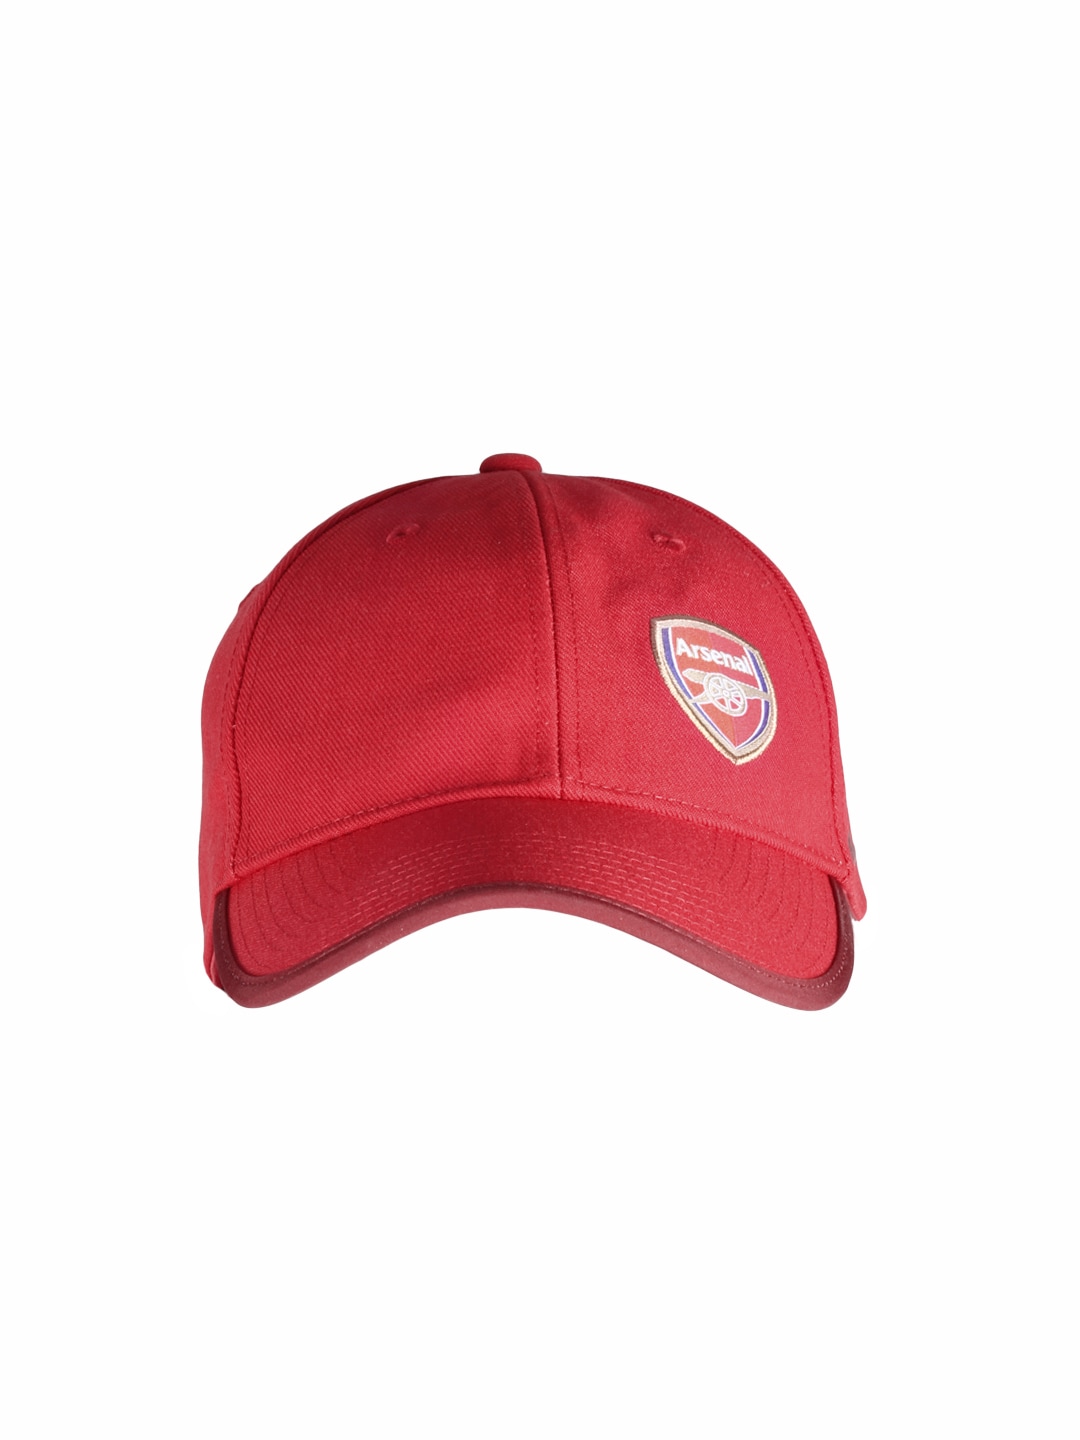 Nike Unisex Red Cap